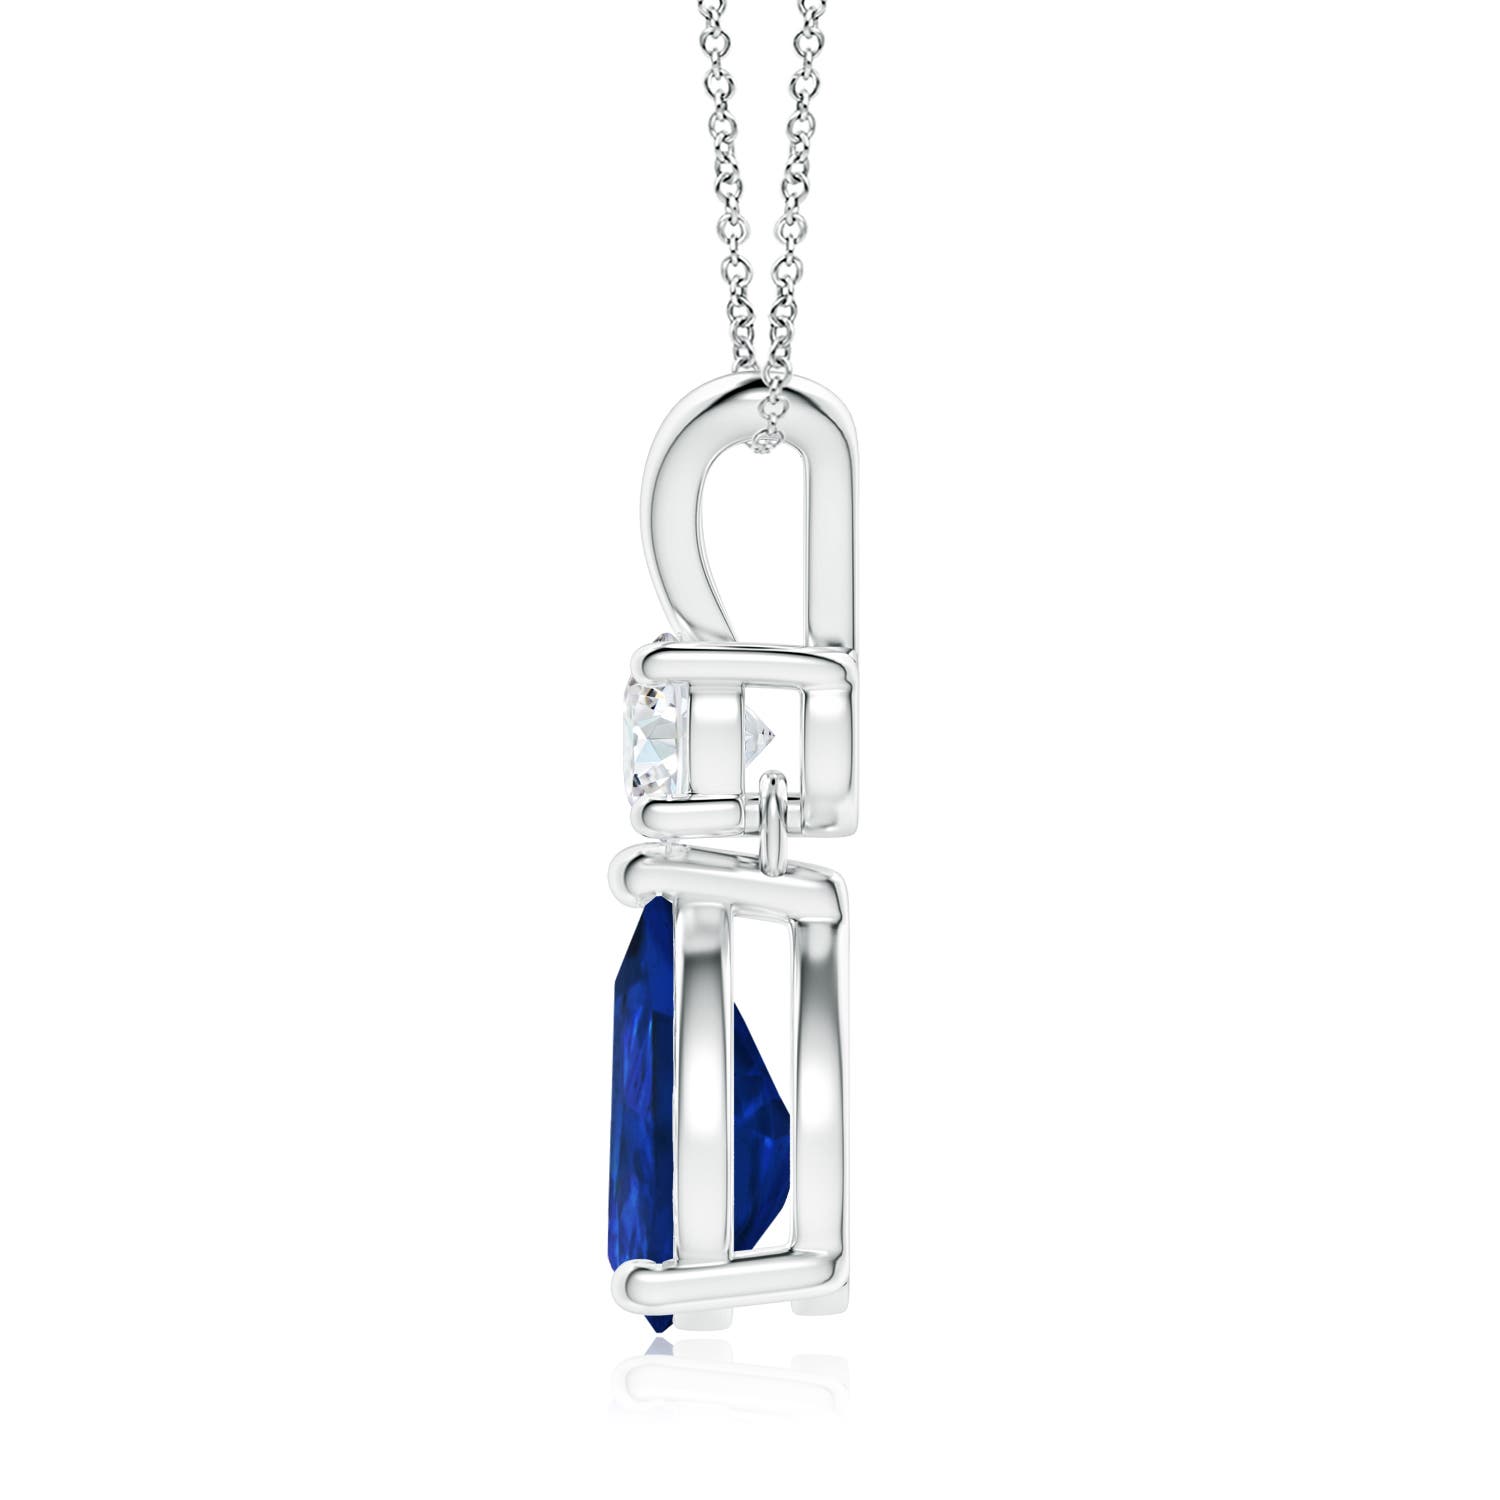 Shop Blue Sapphire Pendant Necklaces for Women | Angara